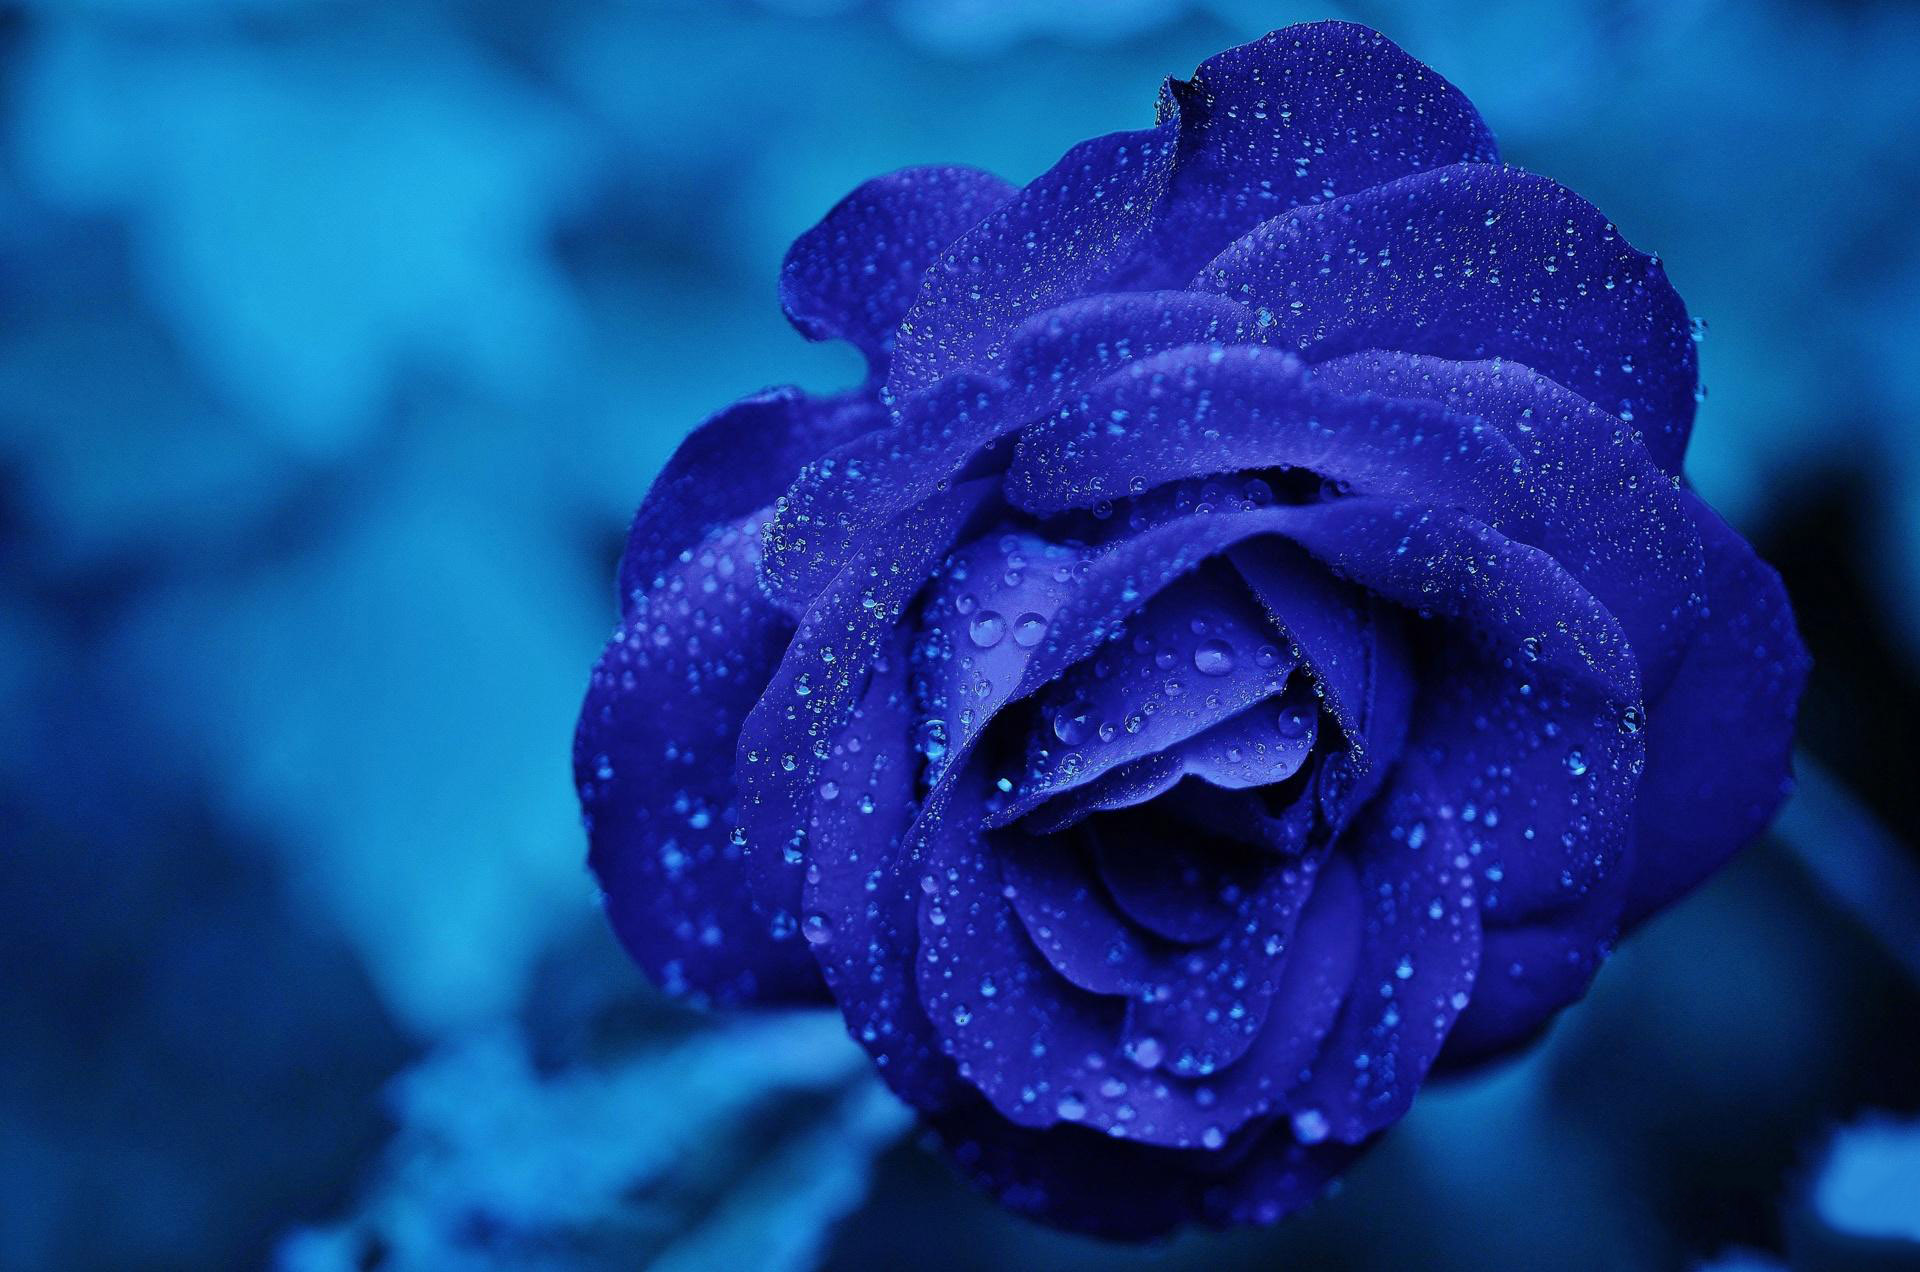 Hoa hồng xanh đẹp nhất